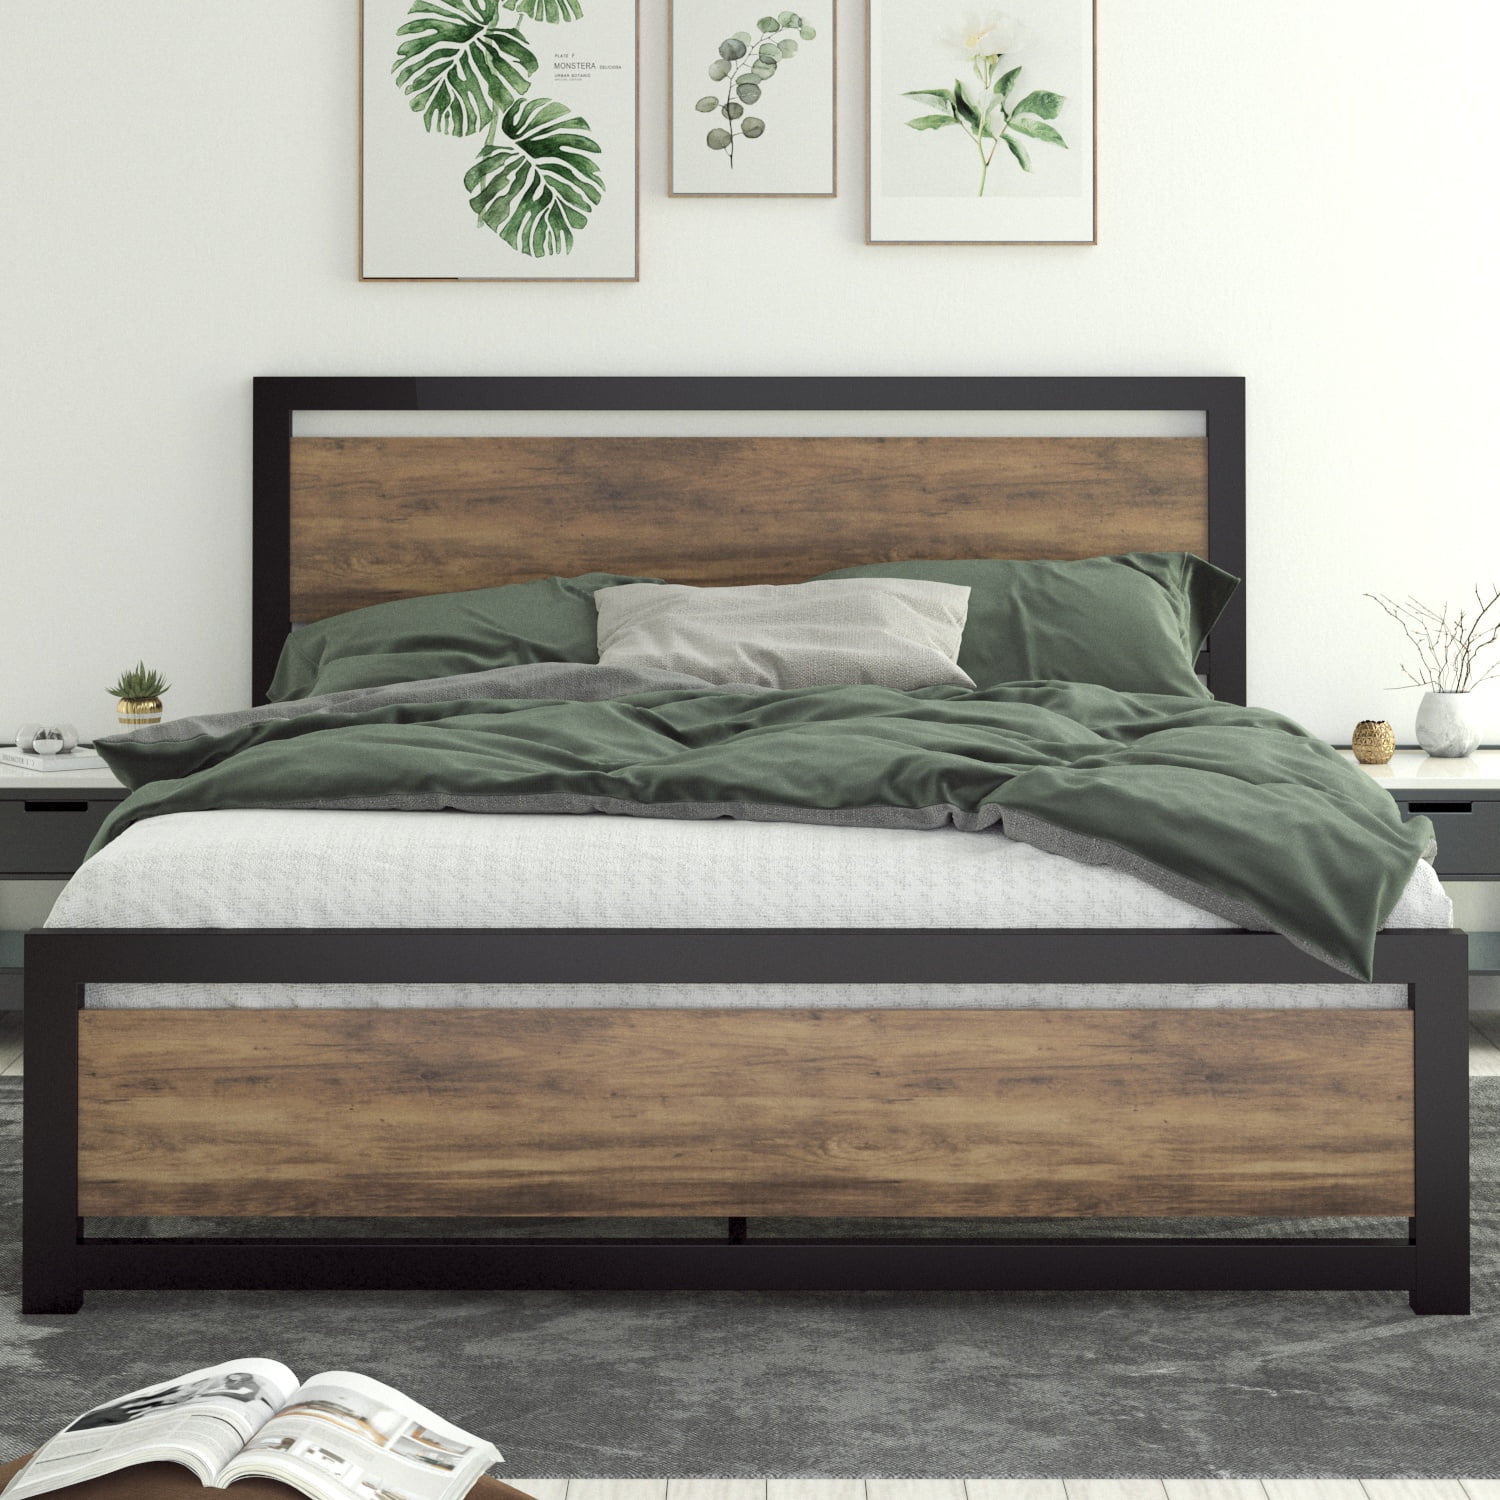 Zinus Wen 12 Deluxe Wood Platform Bed, Zinus Twin 12 Inch Solid Wood Platform Bed With Headboard King